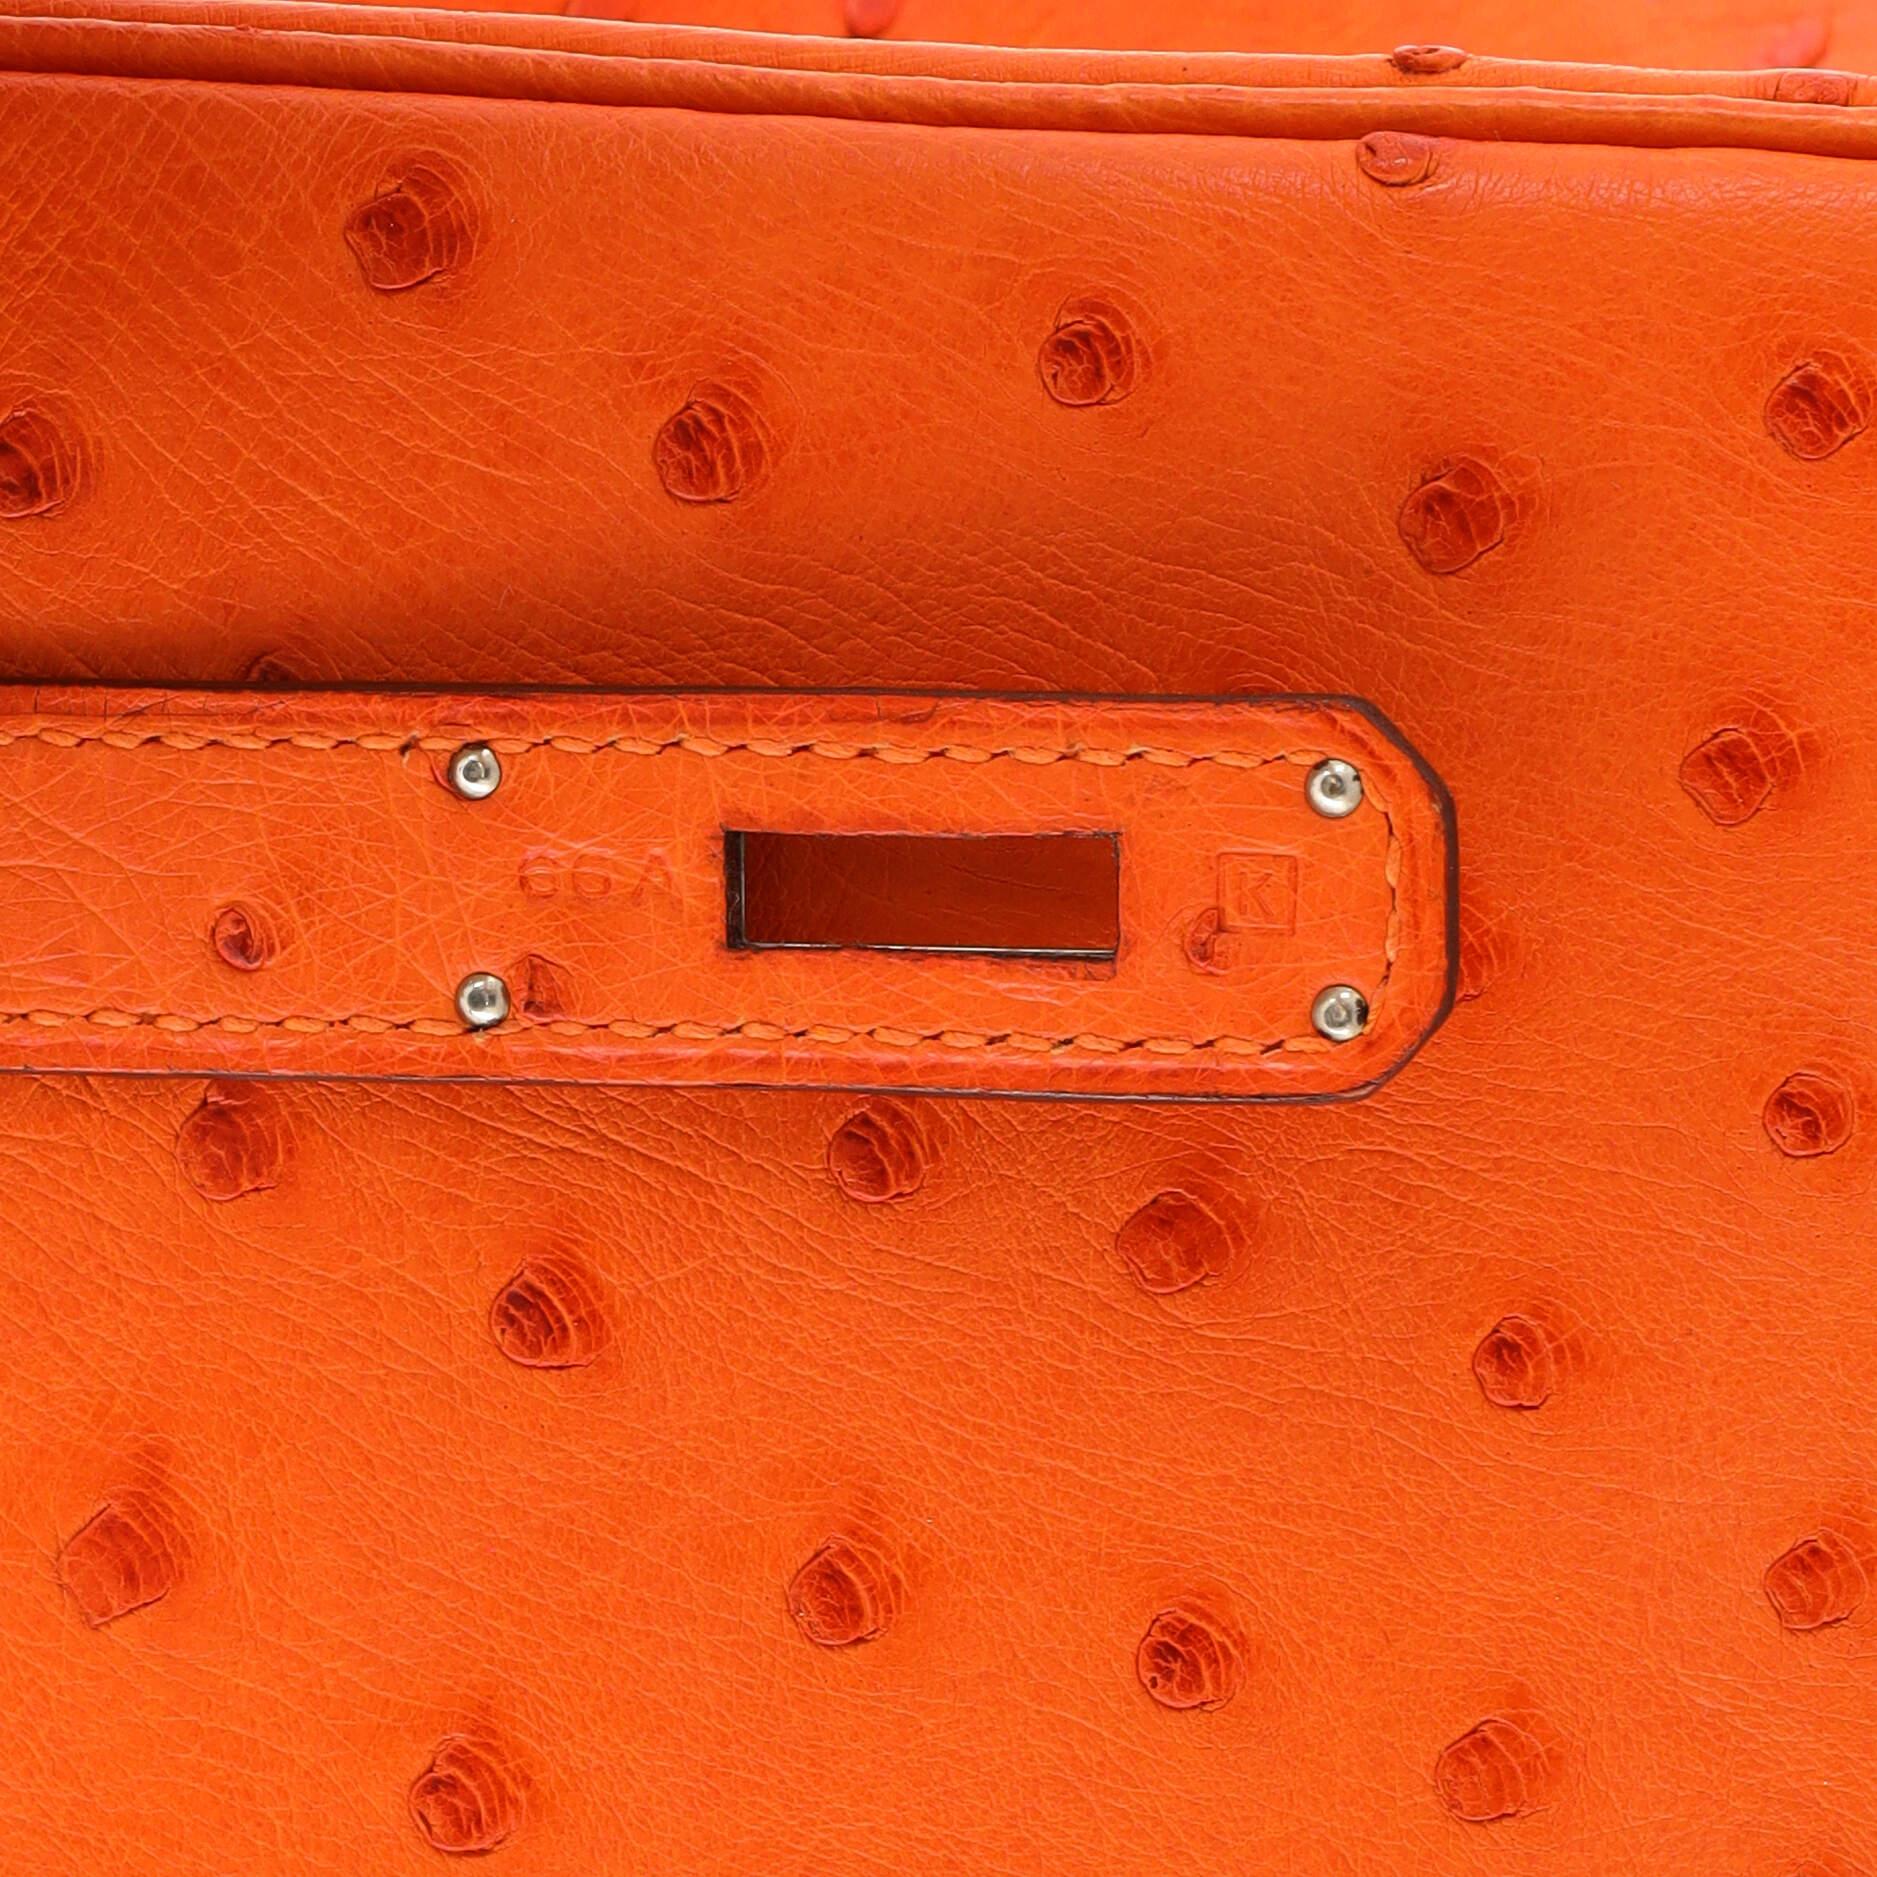 Hermes Birkin Handbag Tangerine Ostrich with Palladium Hardware 30 5